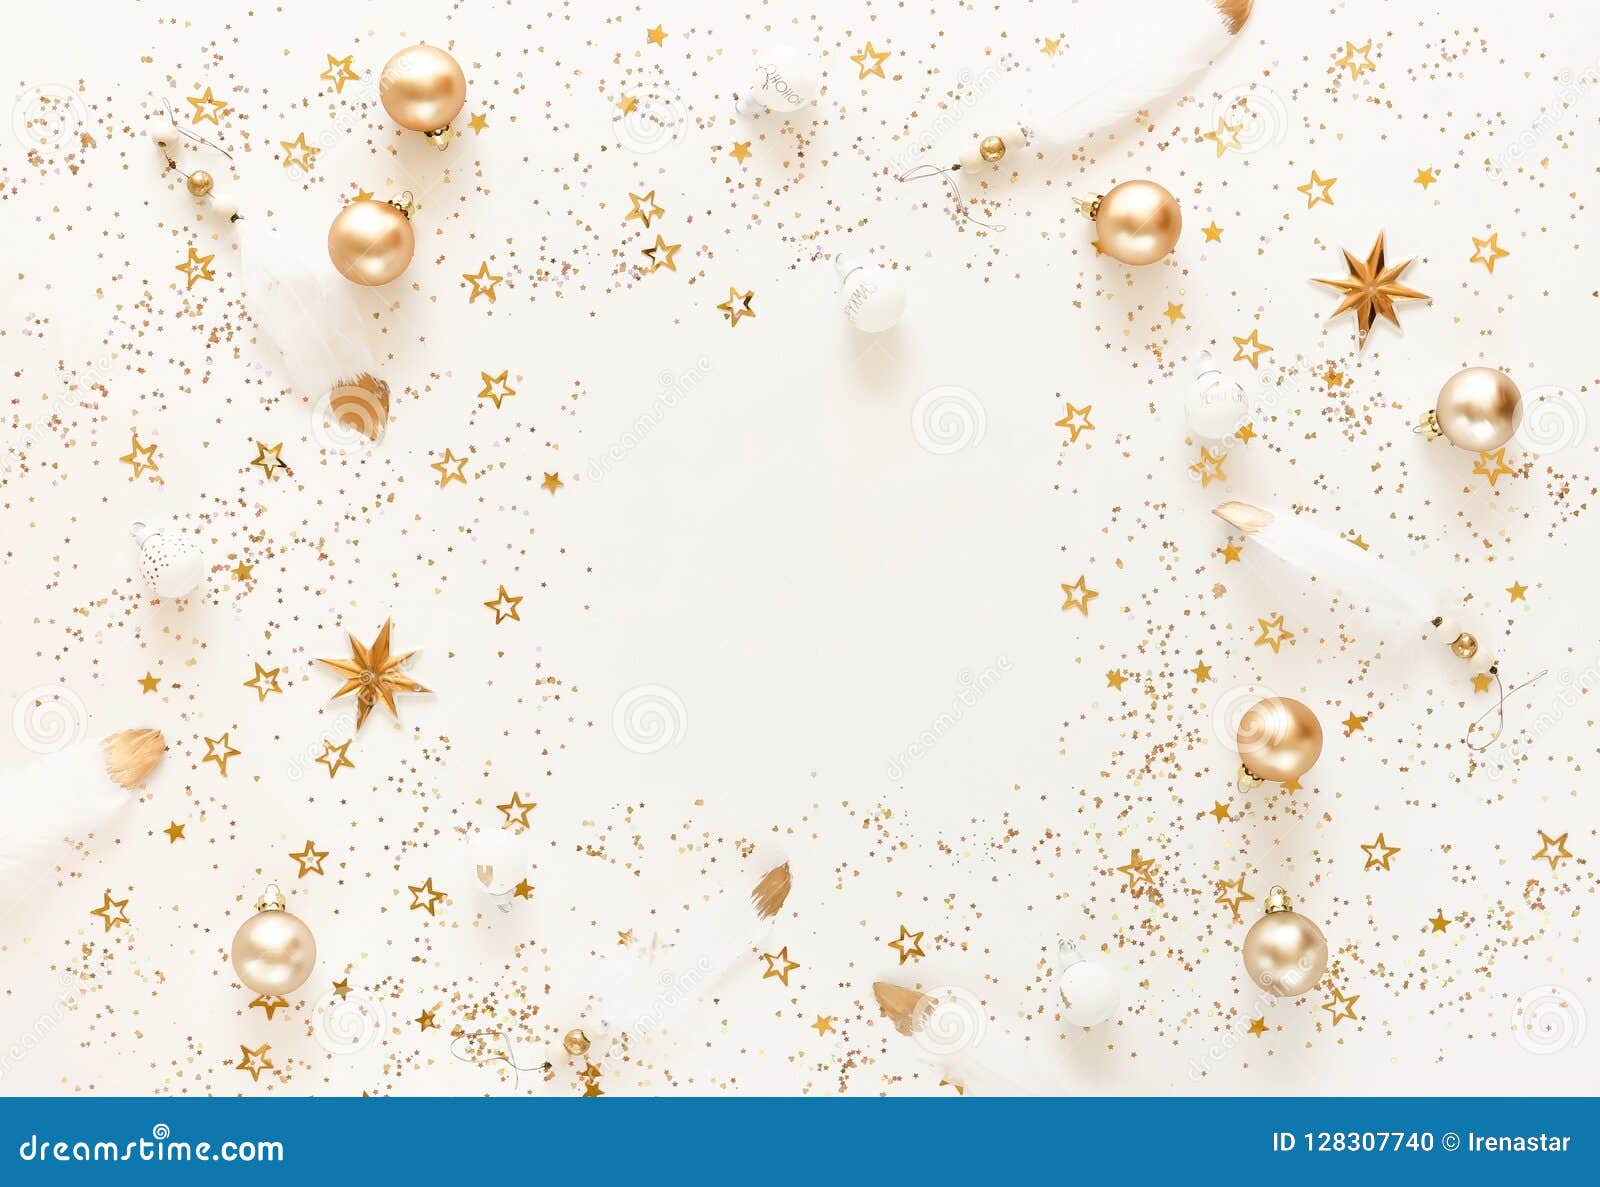 Hãy đắm chìm trong không khí Noel với nền nghệ thuật giáng sinh vàng trắng đầy cảm hứng! Bộ sưu tập rực rỡ này sẽ mang đến cho bạn những cảm xúc tuyệt vời và sáng tạo mới mẻ để thưởng thức Giáng sinh năm nay.